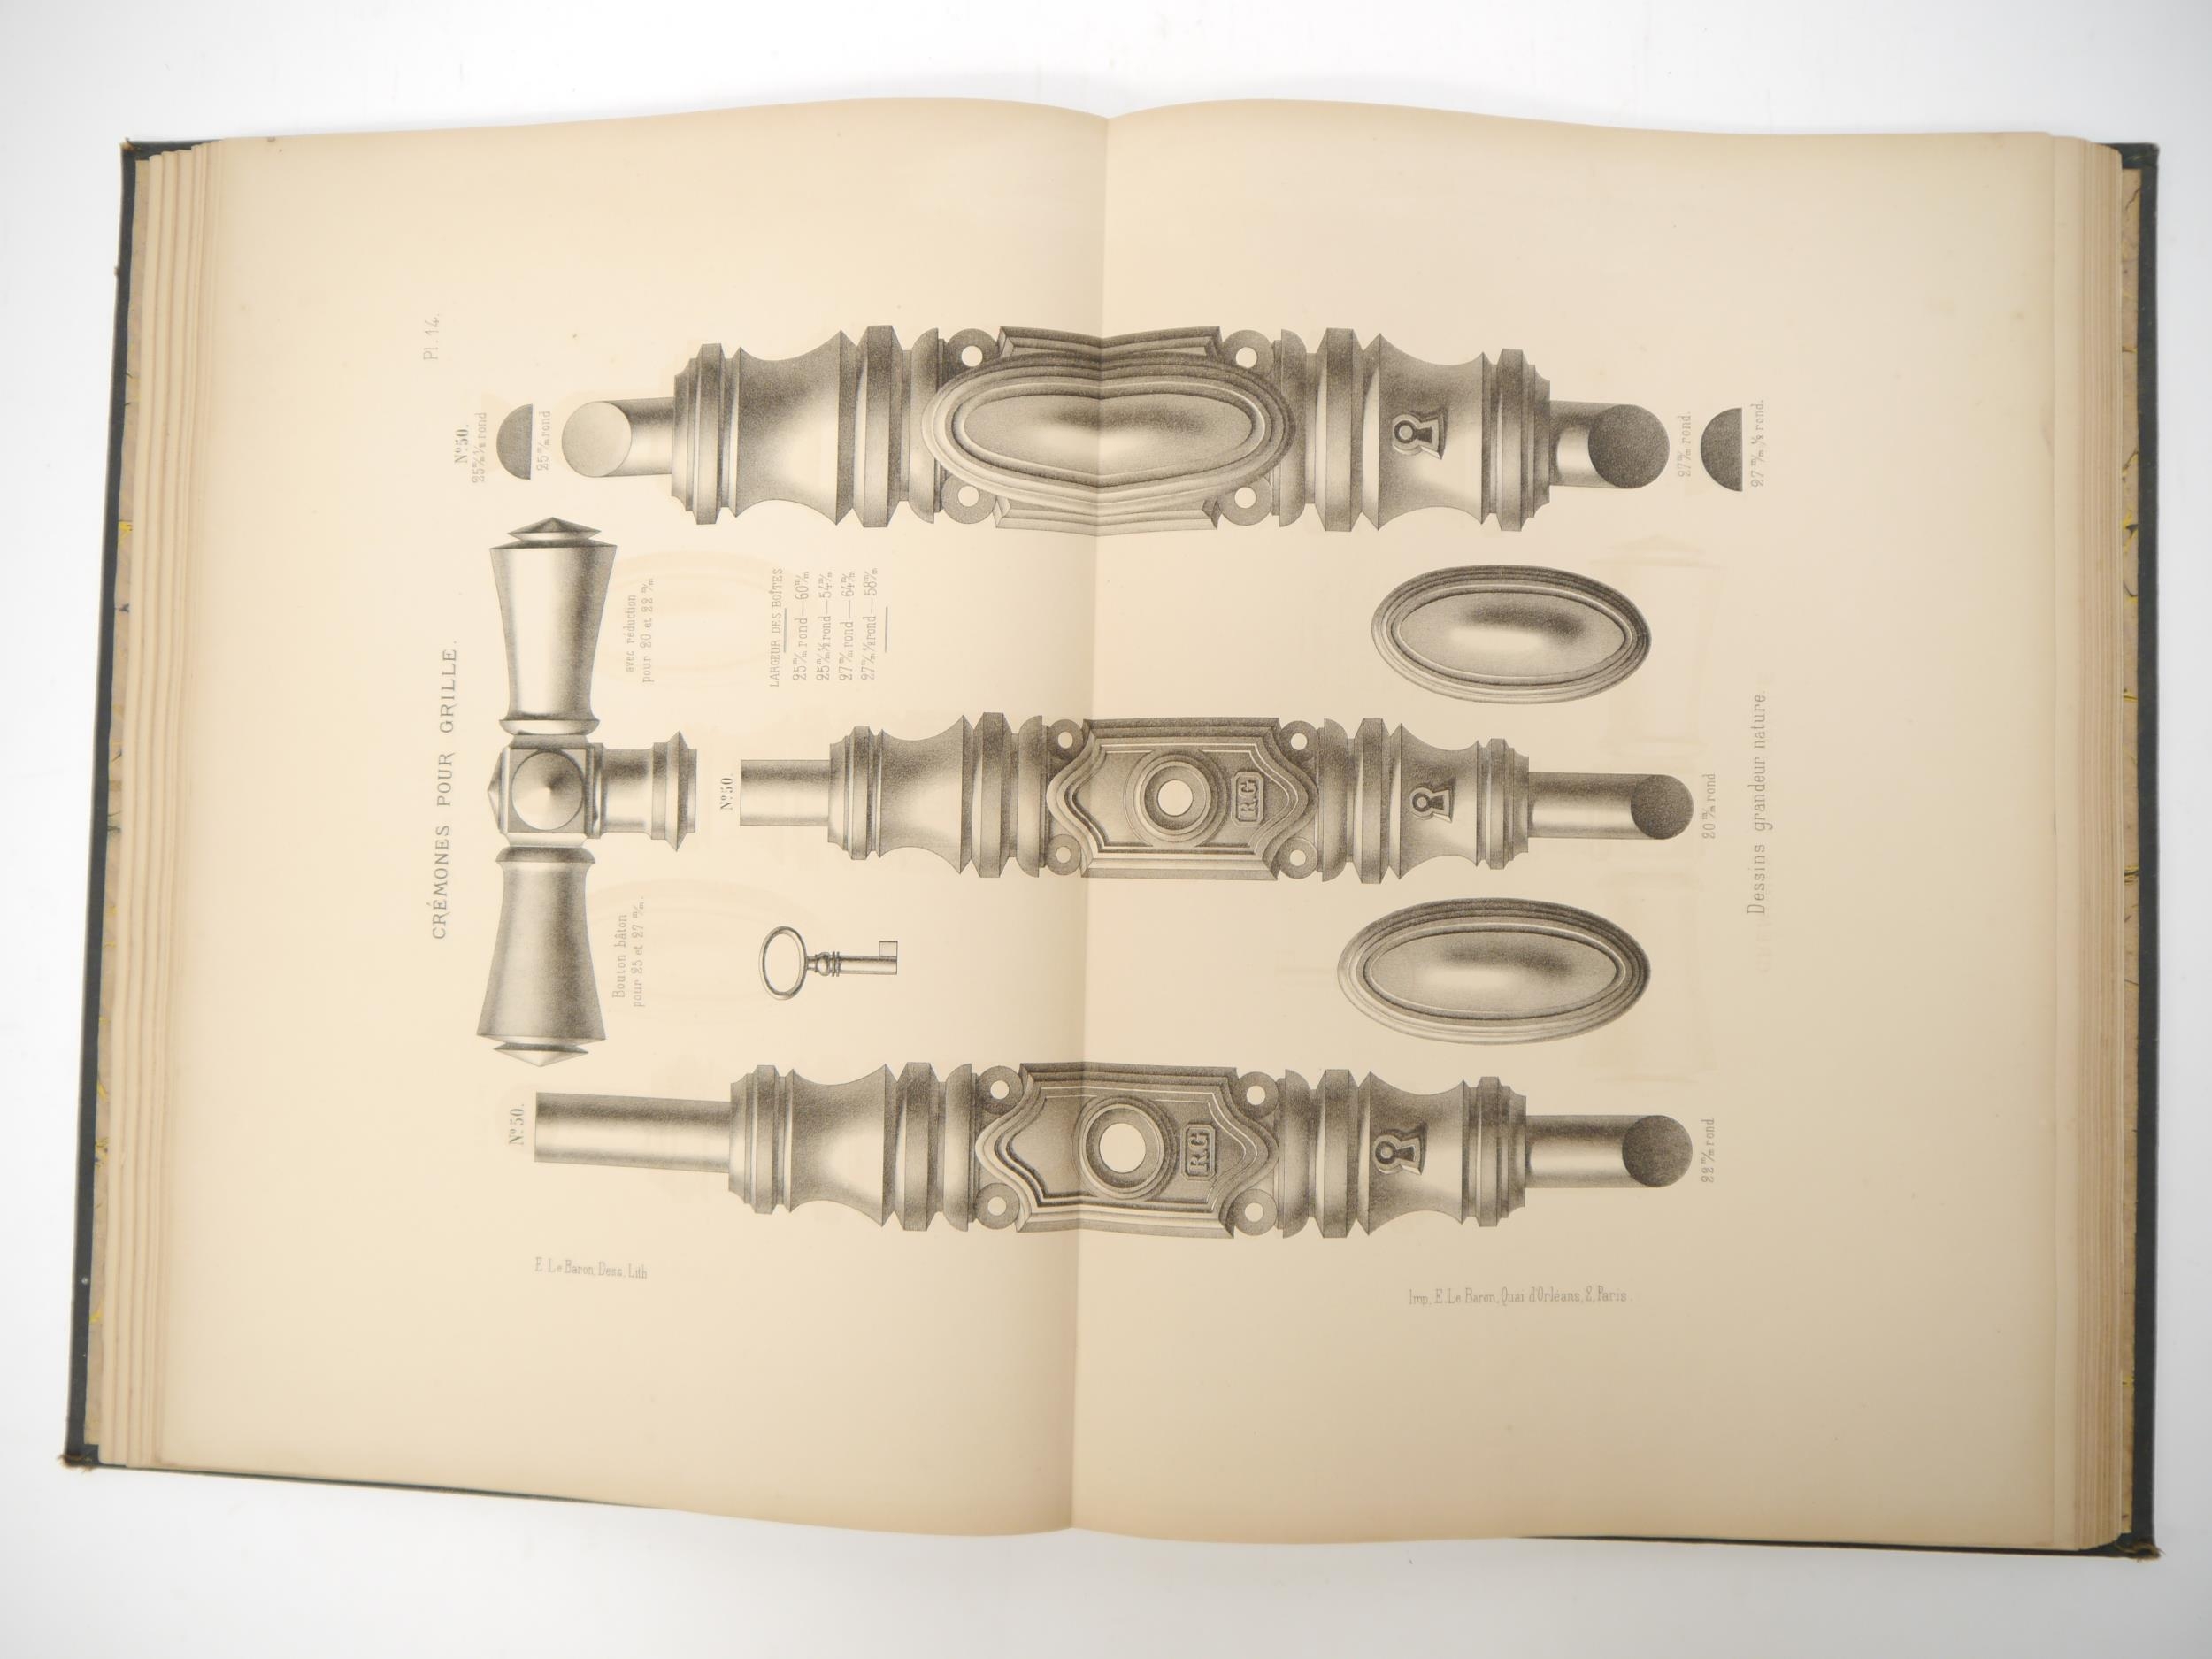 A 19th Century trade catalogue for Maison R. Garnier 'Aperçu des principaux modèles de la maison - Image 3 of 8